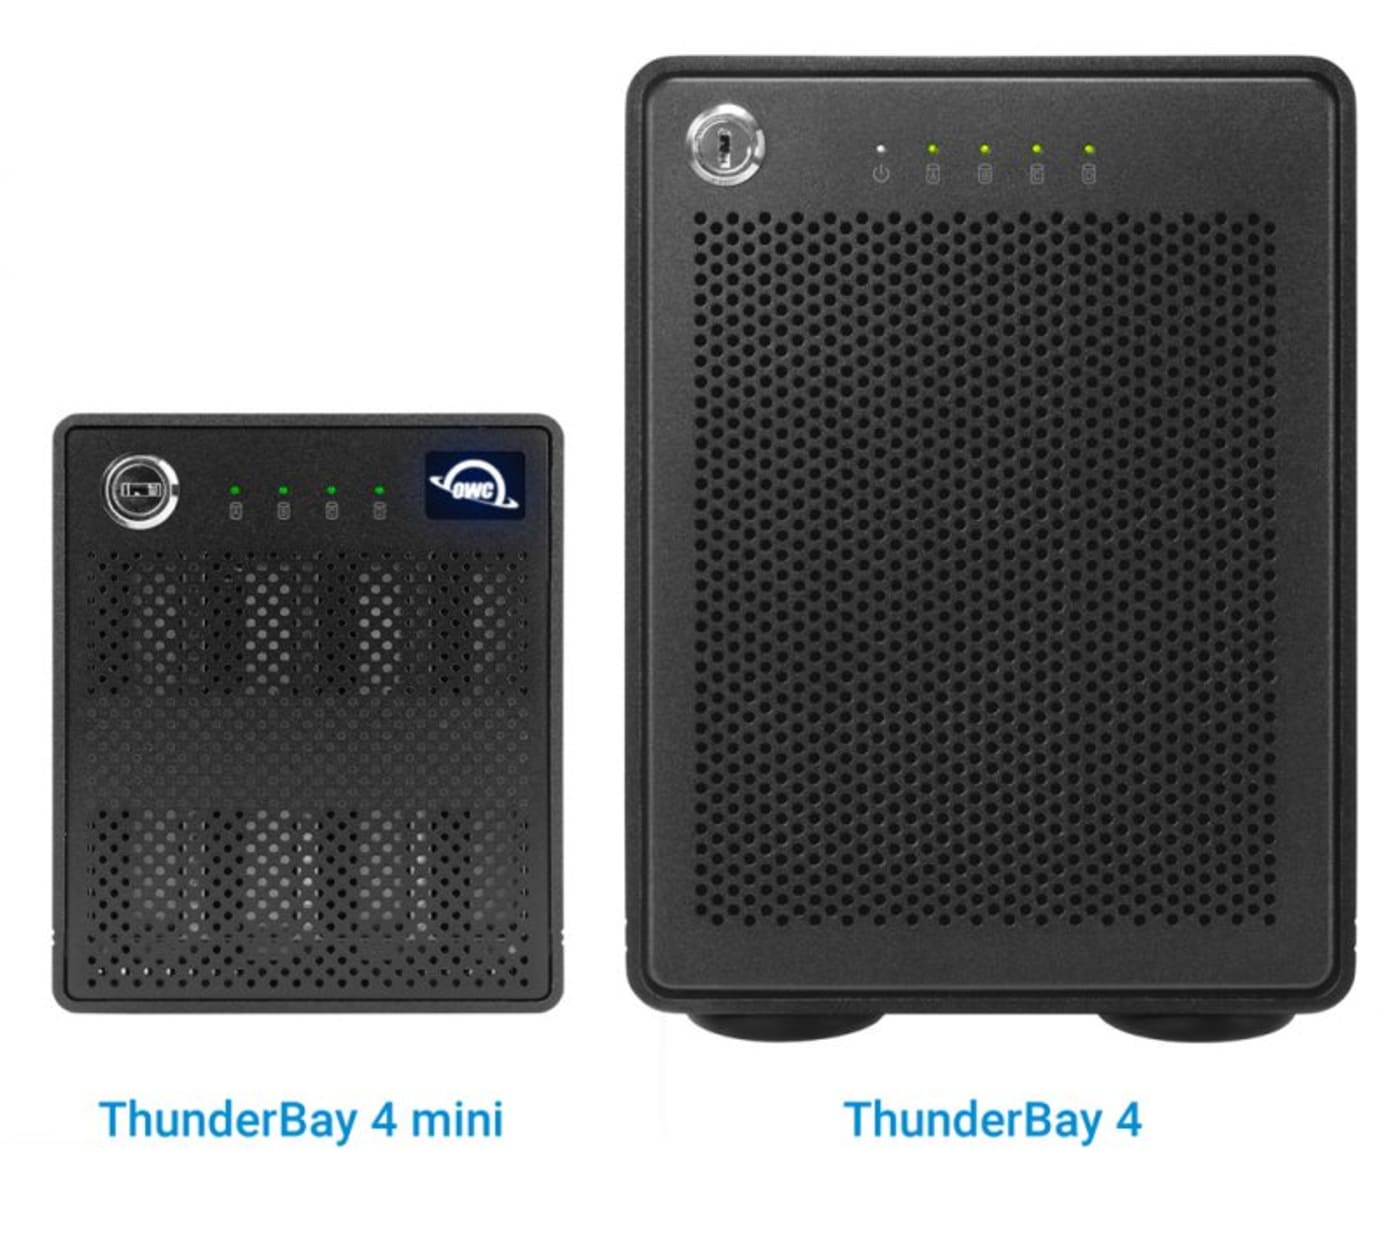 OWC ThunderBay 4 mini - Thunderbolt 2